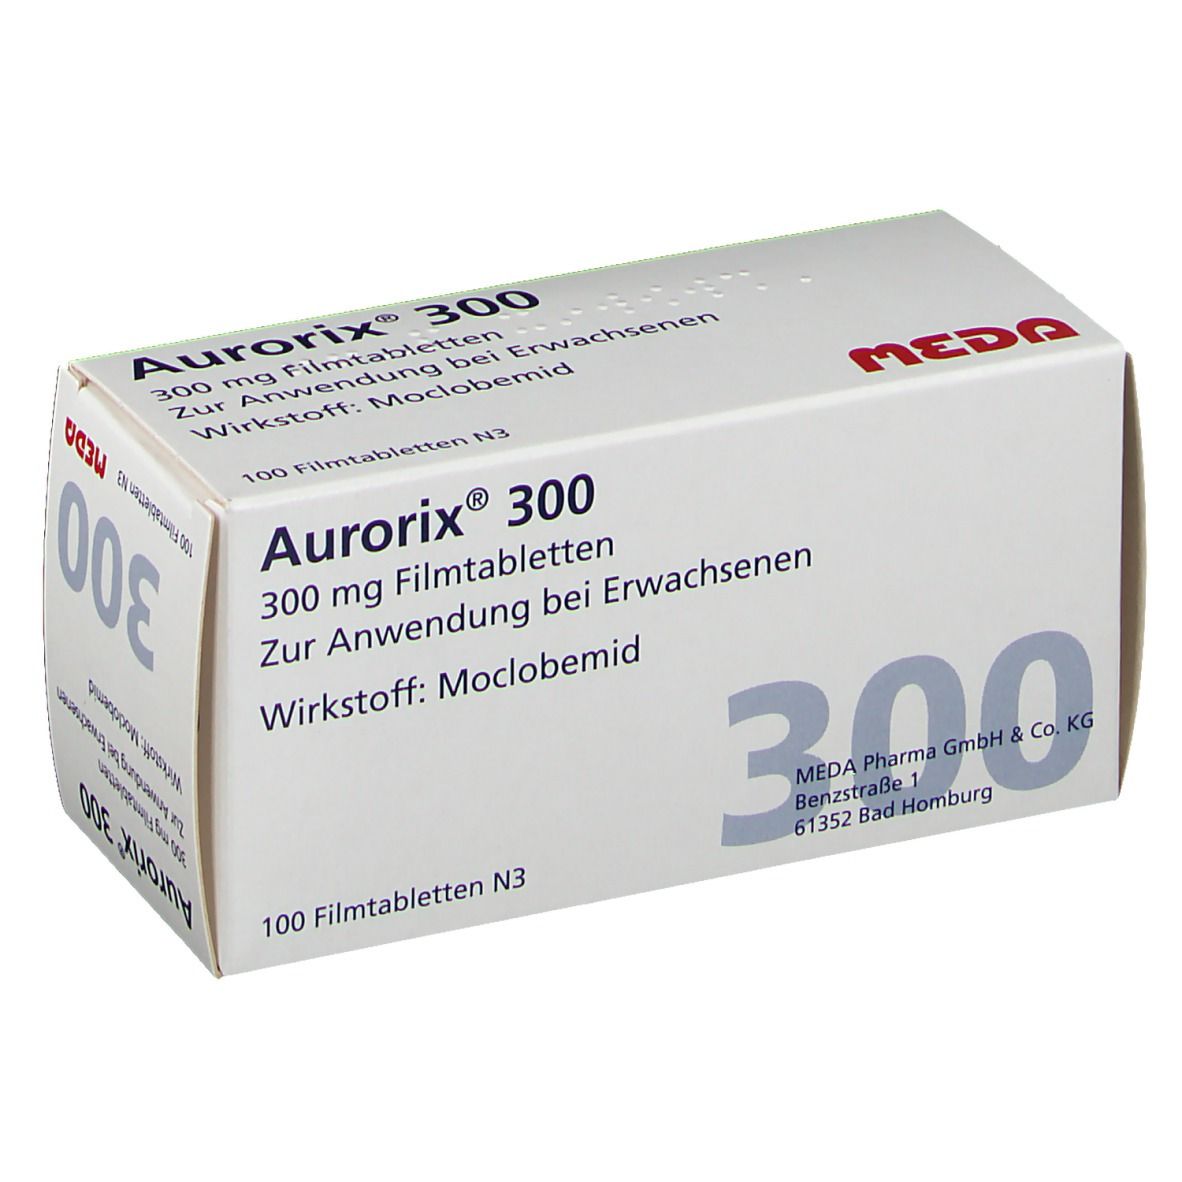 Aurorix® 300